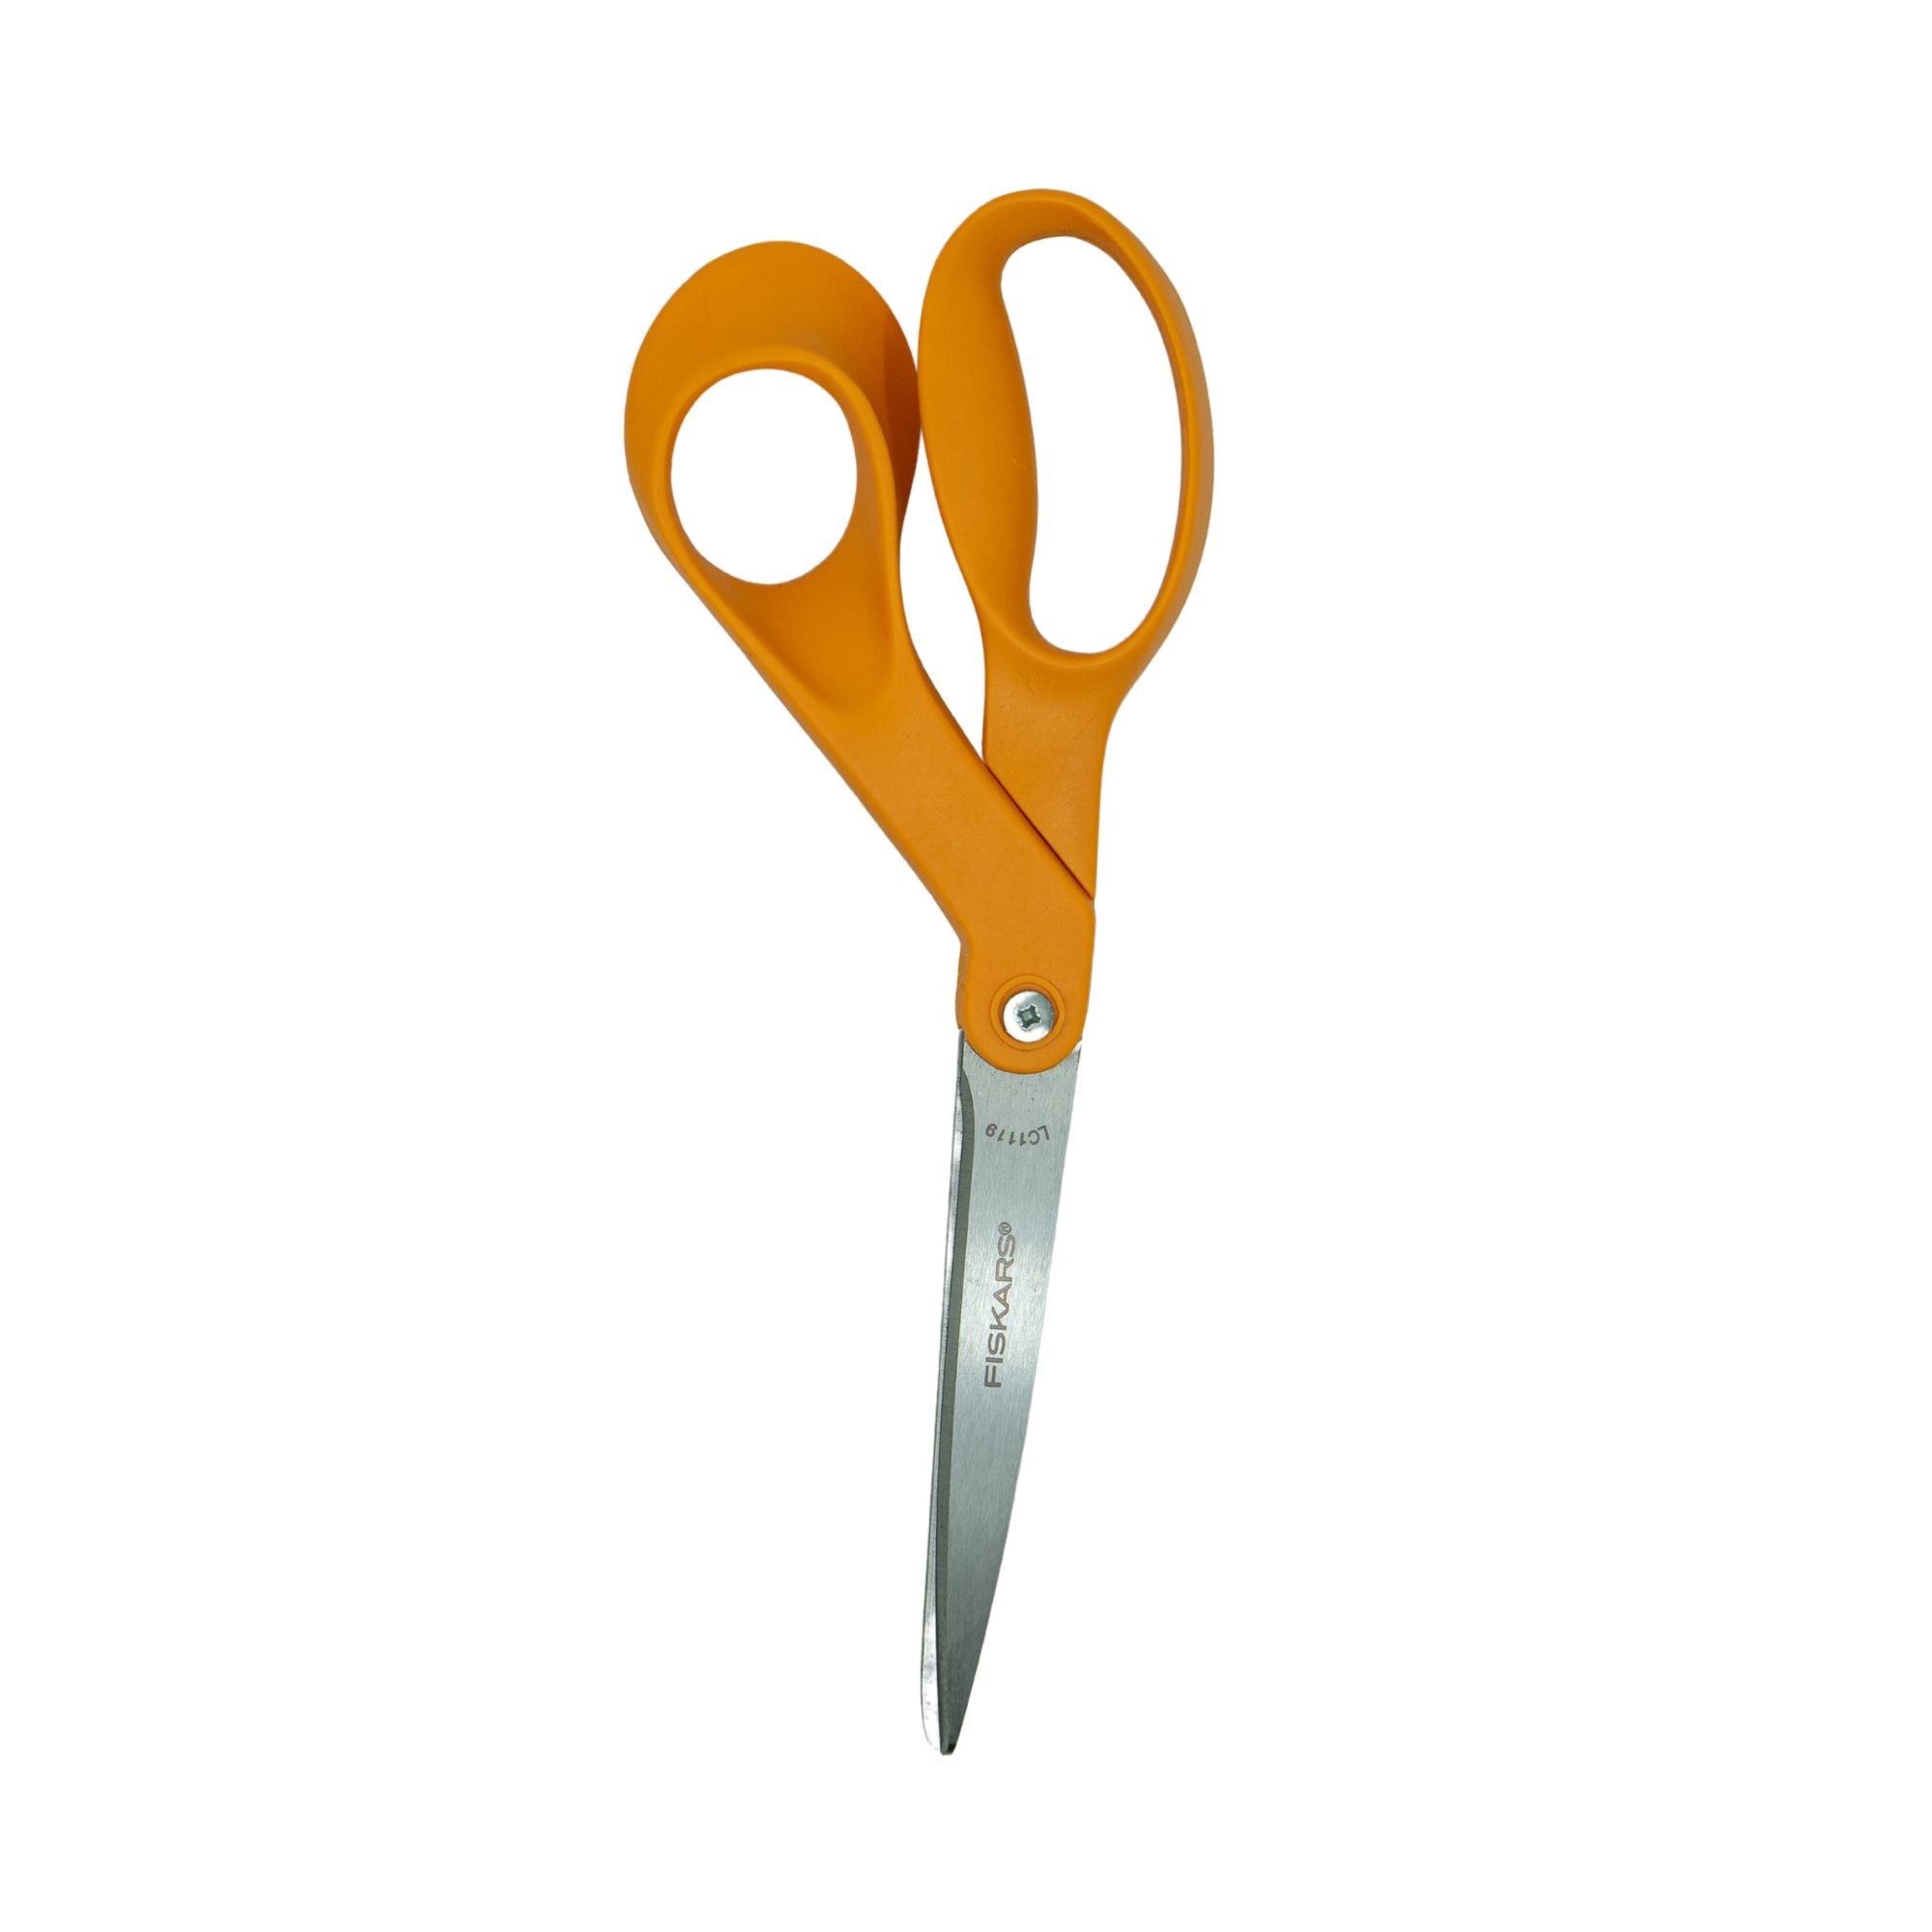 Fiskars All-Purpose Scissors (8) - LegalSupply